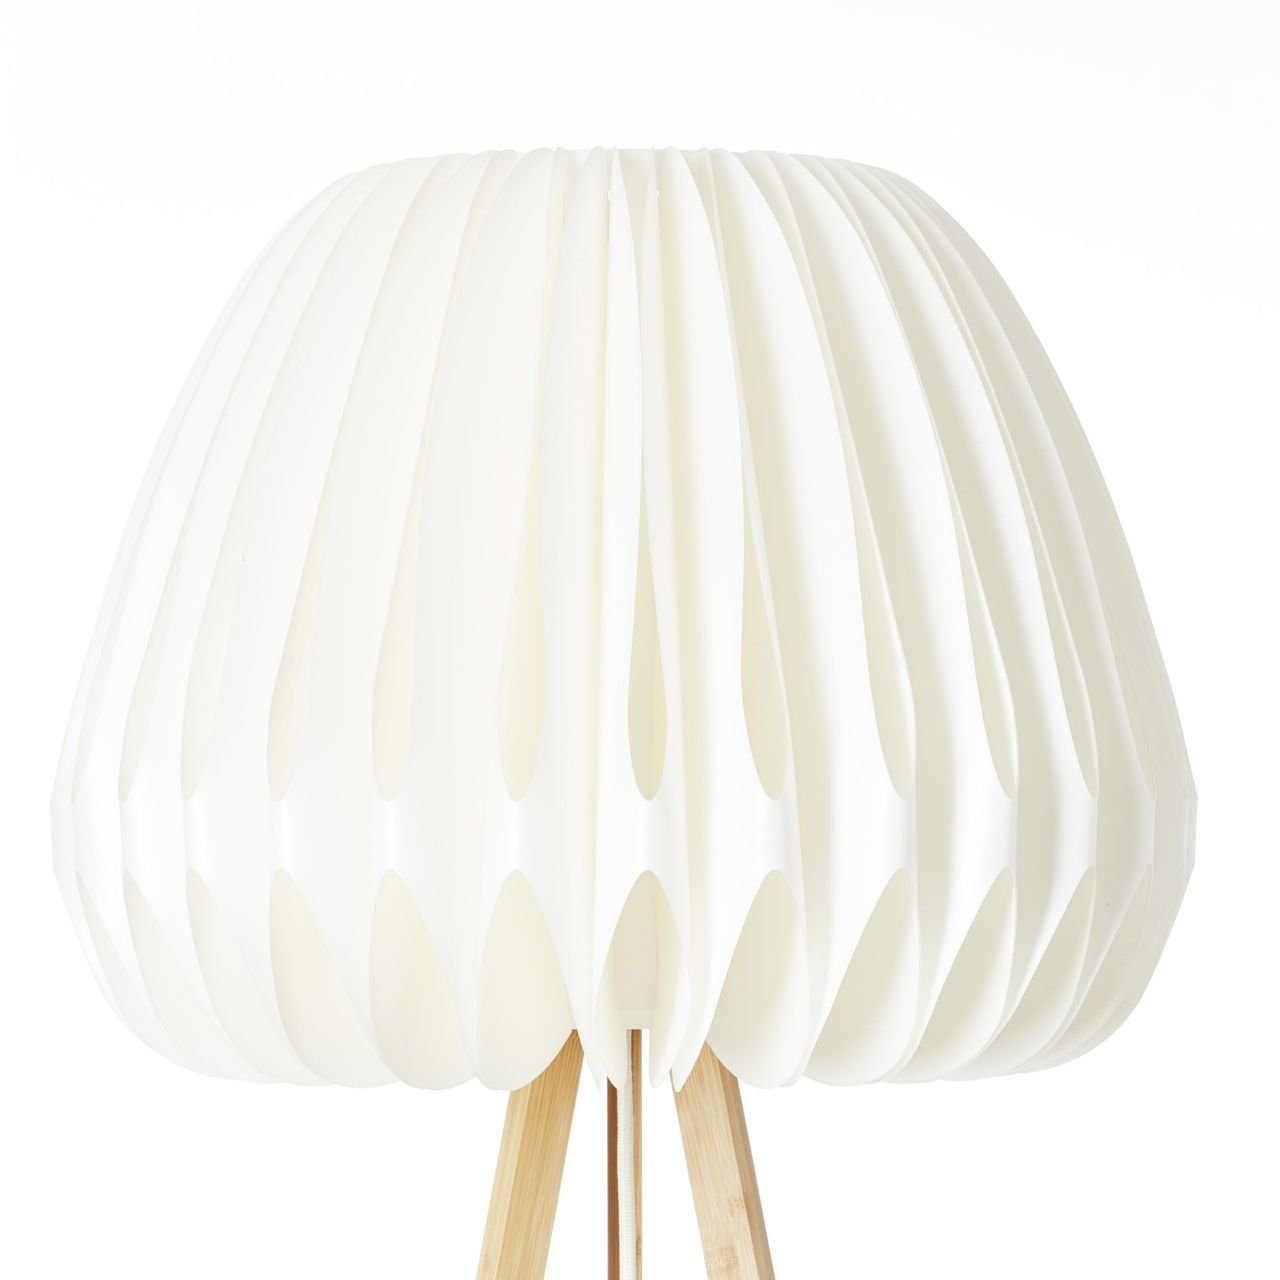 Stehlampe Bambus/Kunststoff dreibeinig Brilliant Inna, Lampe, hell/weiß, Inna holz Standleuchte,